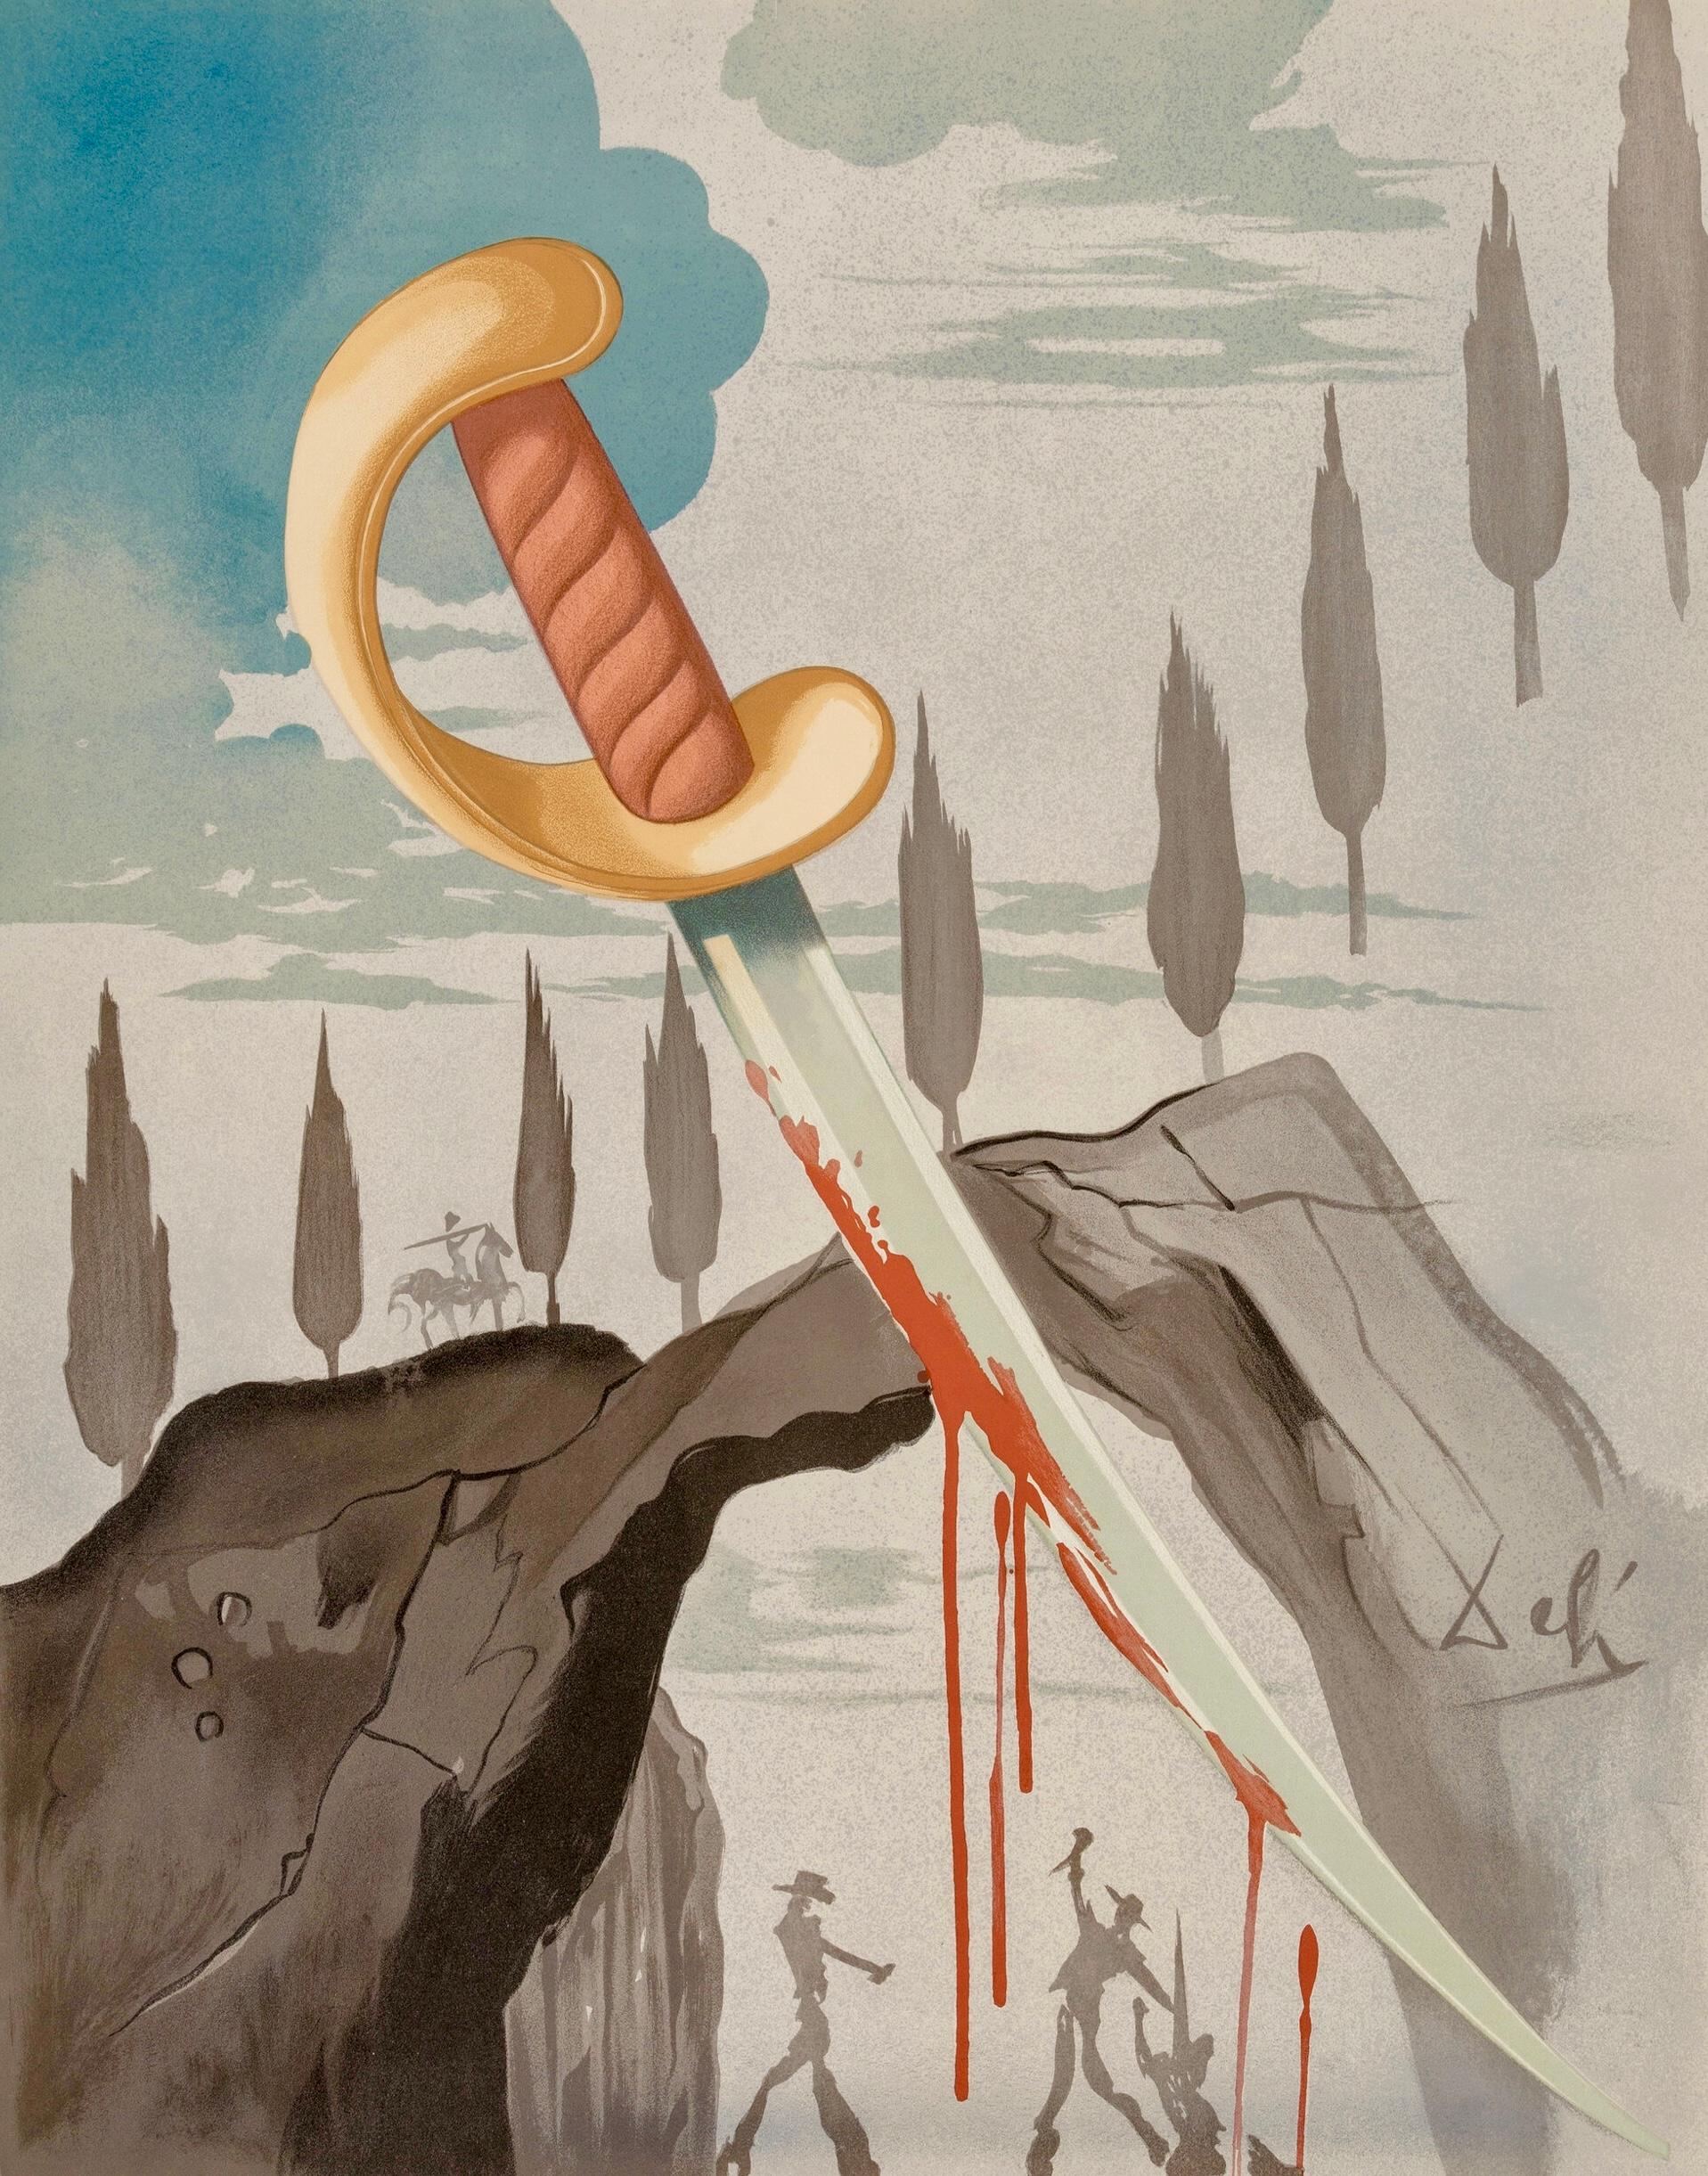 Salvador Dalí Wer Carmen entführt, muss mit seinem Leben bezahlen 1970 (aus Carmen):

Farblithographie auf Arches-Papier.
25,5 x 19,8 Zoll (64,8 x 50,5 cm). 

Insgesamt guter Vintage-Zustand: leichte Oberflächenabdrücke; geringe